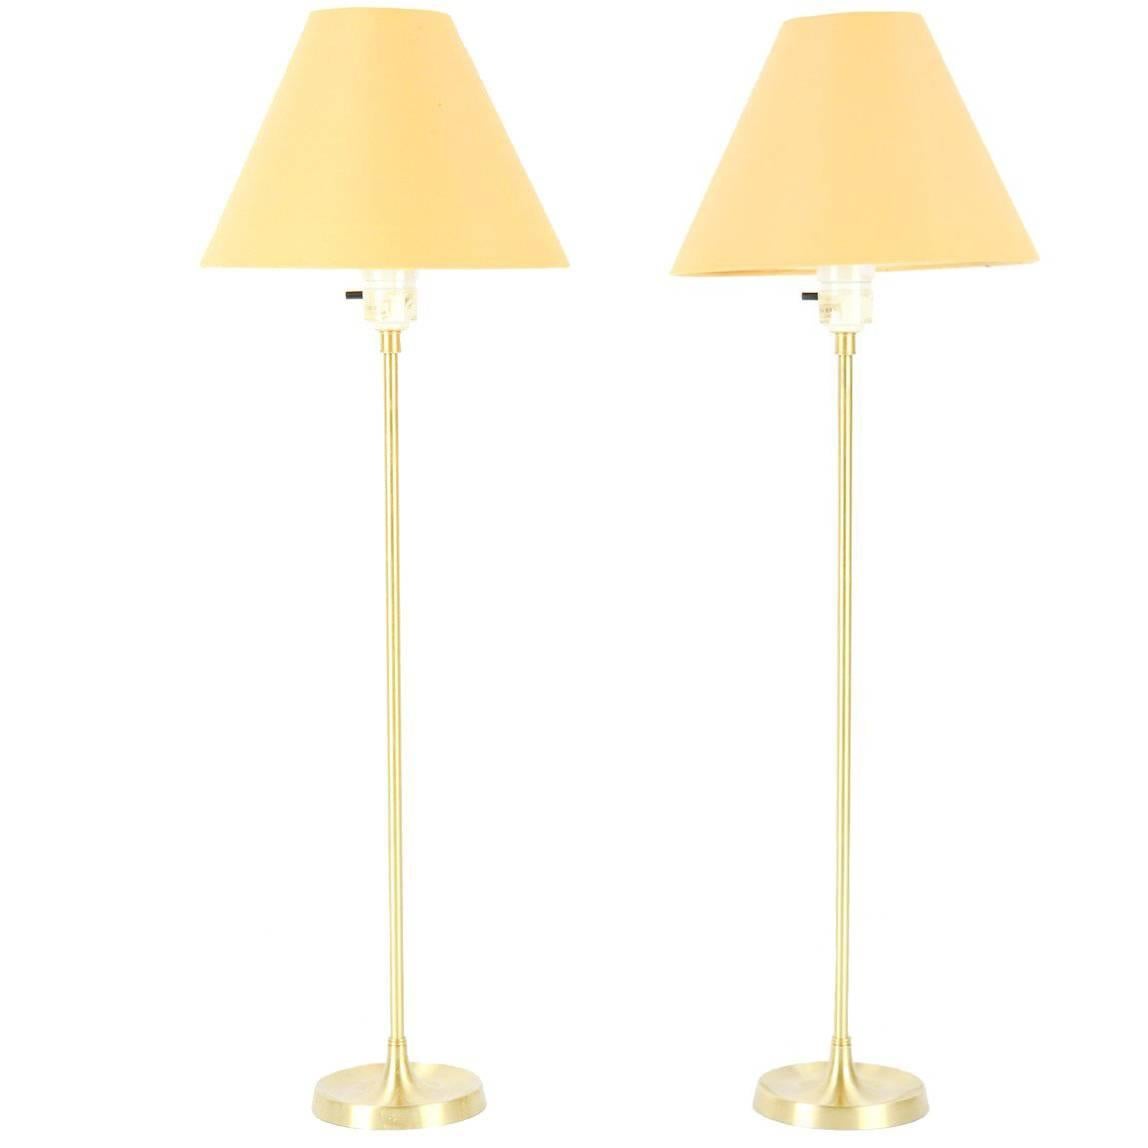 Pair of Le Klint, Model 307 Brass Table Lamps Designed by Esben Klint, 1948